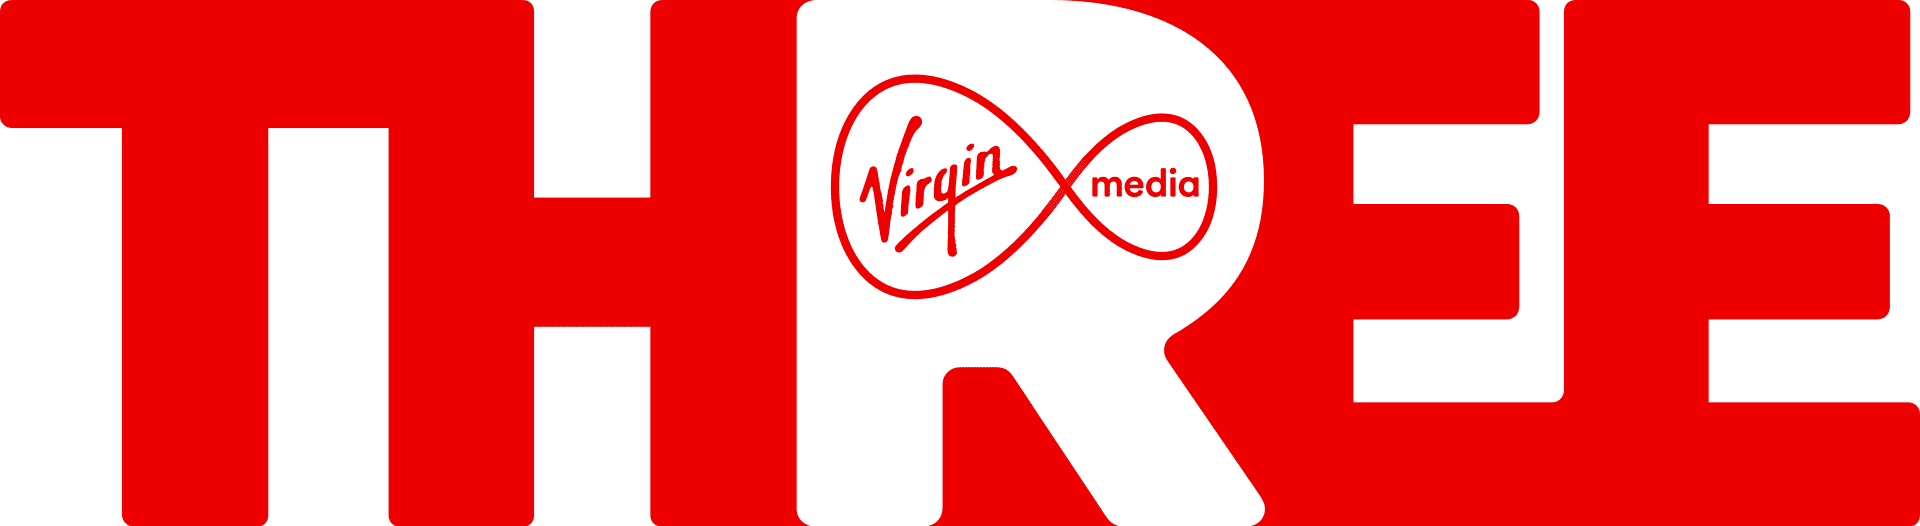 Virgin_Media_Three_logo_2018.svg